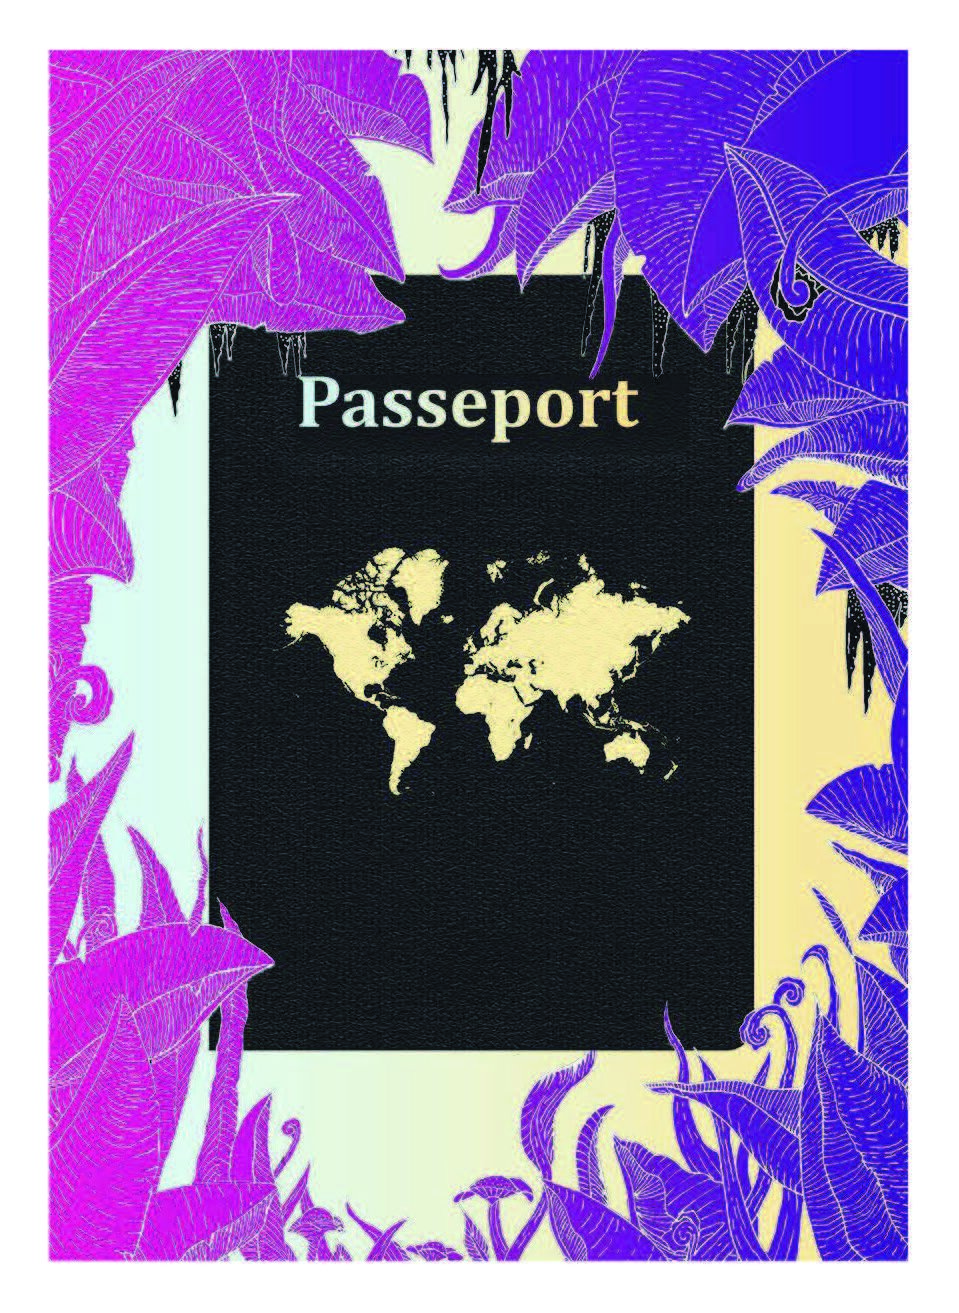 L'affiche de Passeport par Camille Paris. Crédit : L’UniThéâtre